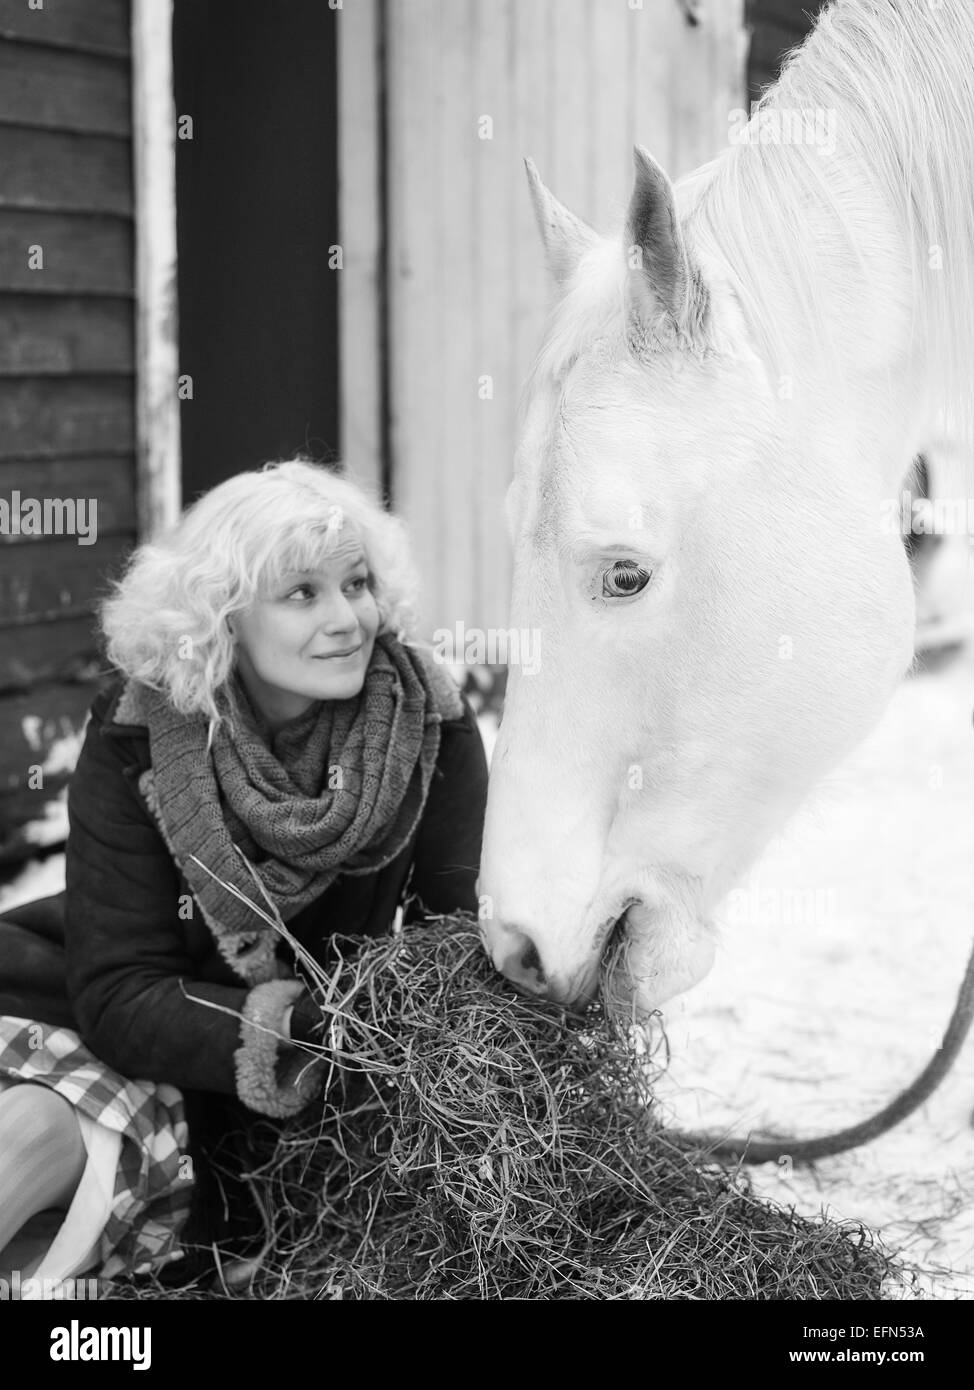 Attraktive blonde Frau speist ein weißes Pferd, bewölkten Wintertag, schwarz / weiß Bild, Fokus auf Pferd Augen Stockfoto